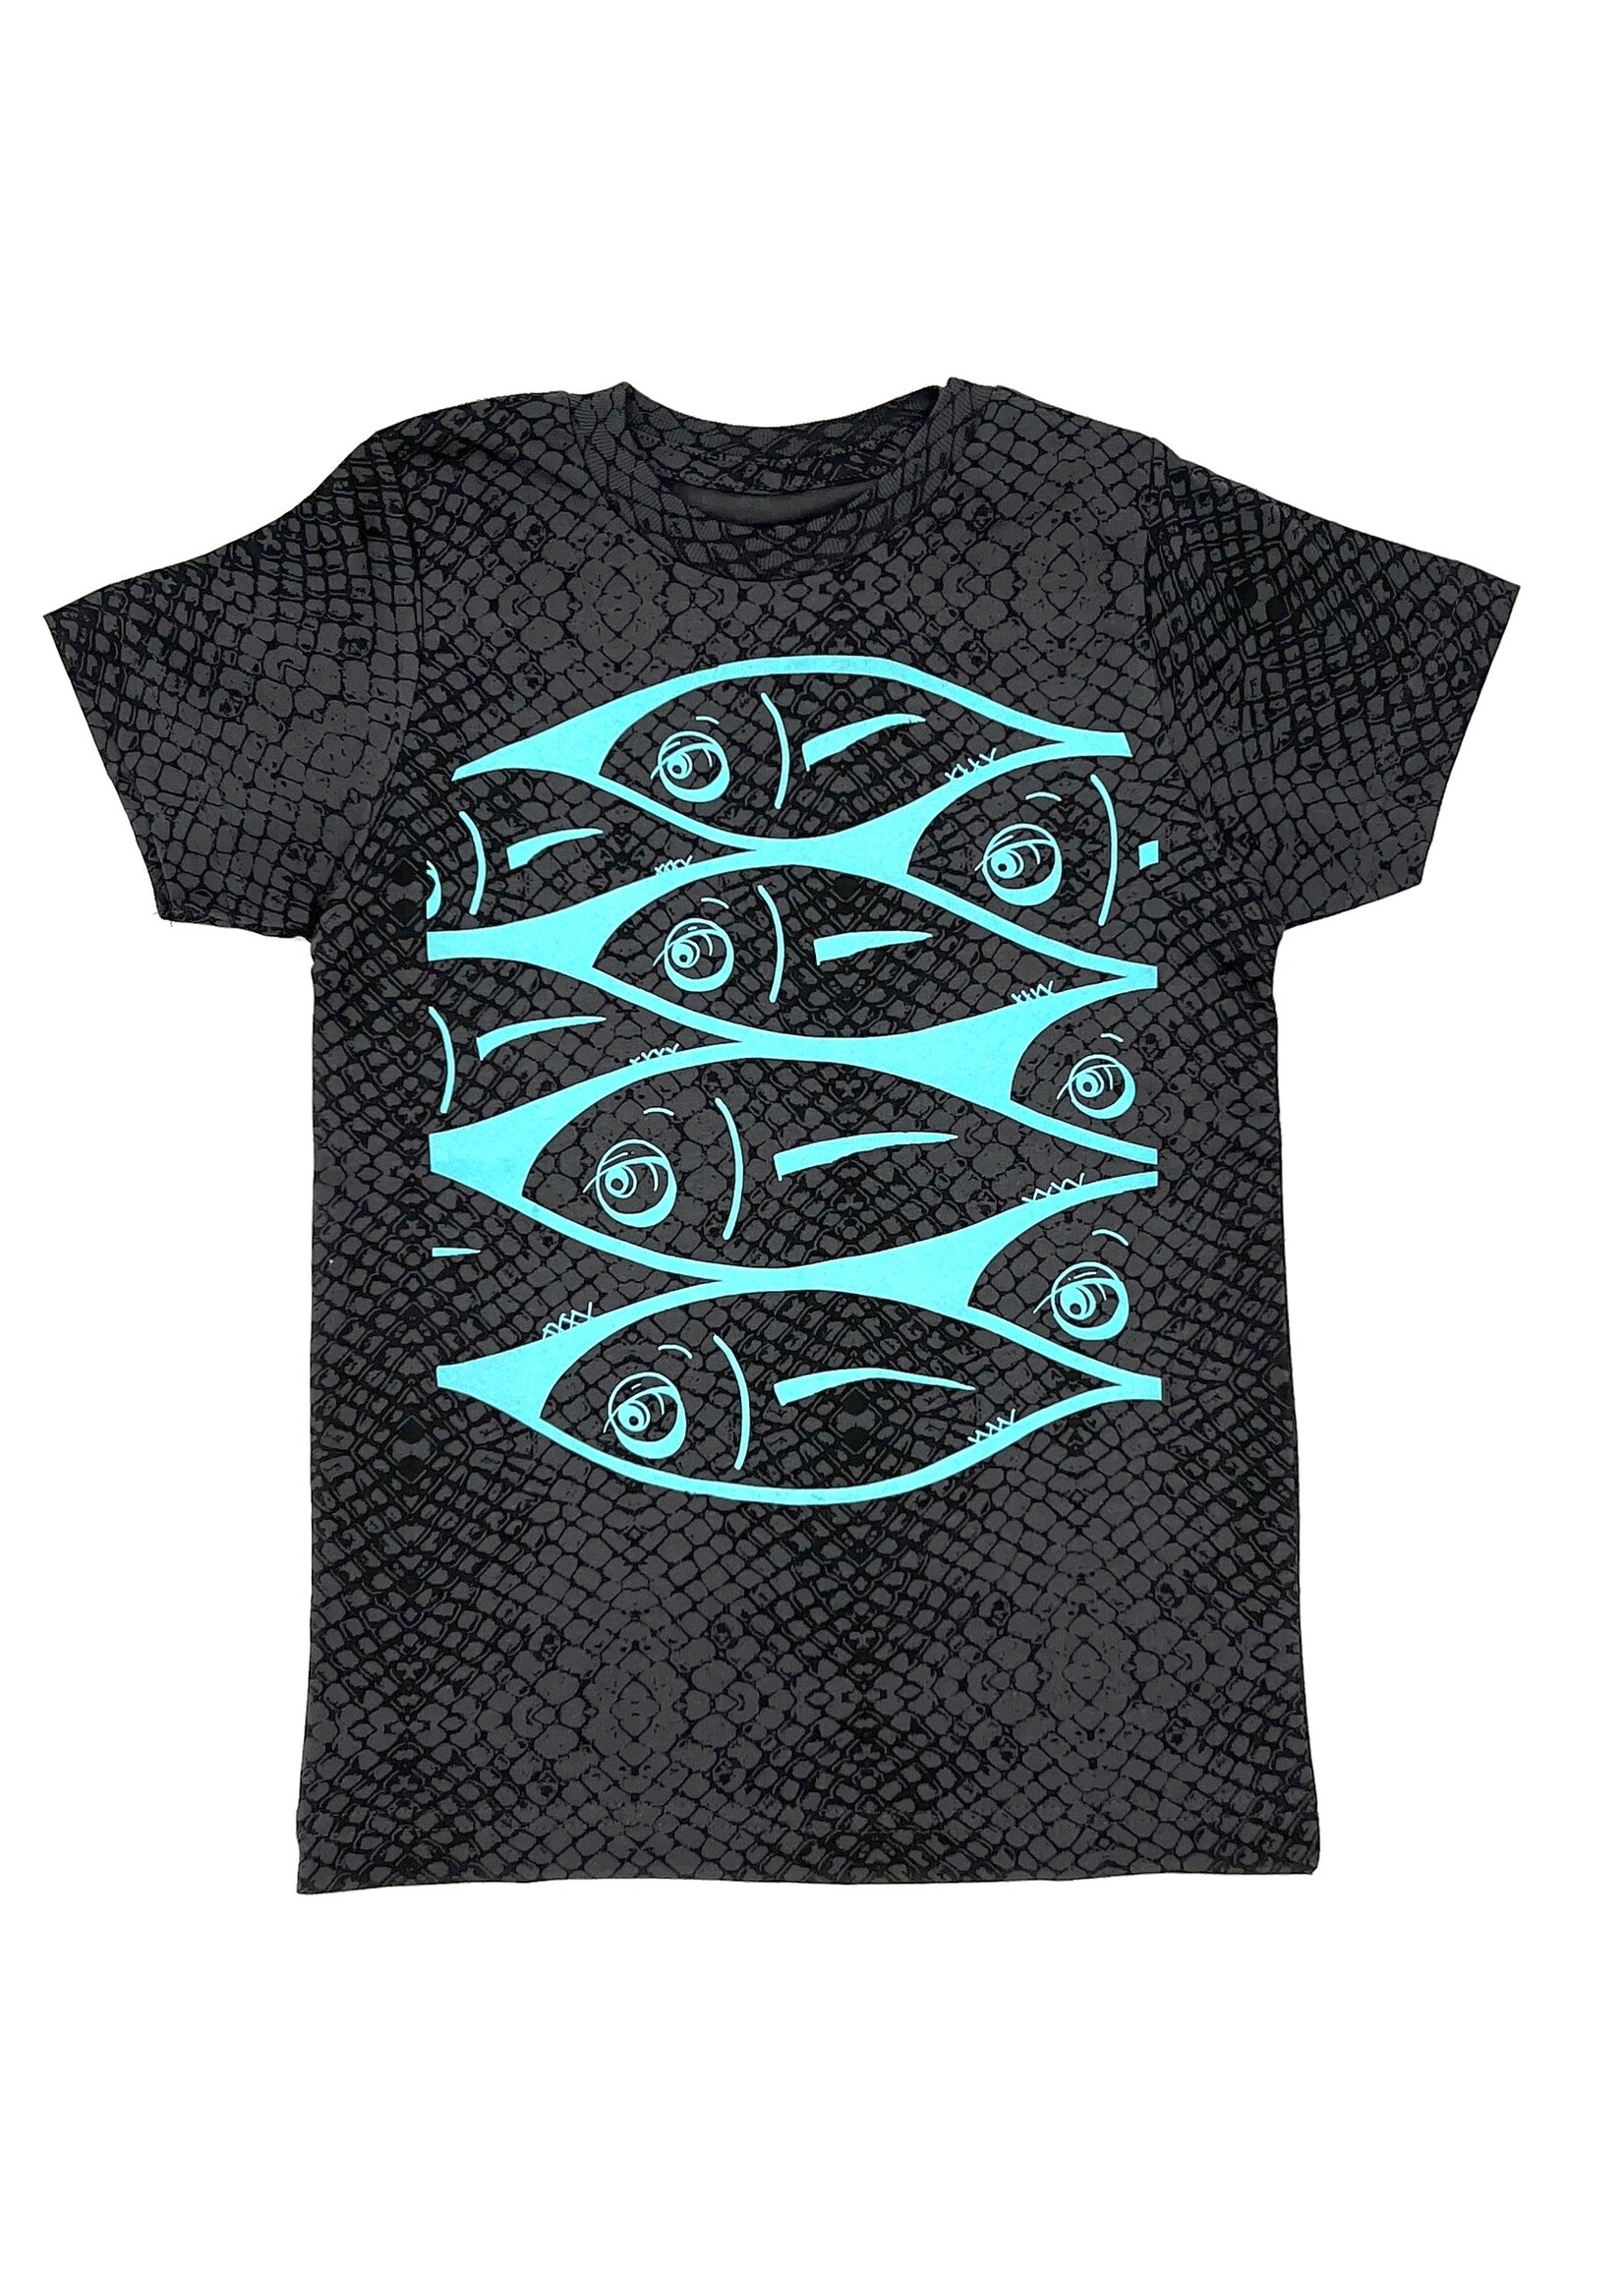 Tini Manini fish school - shirt